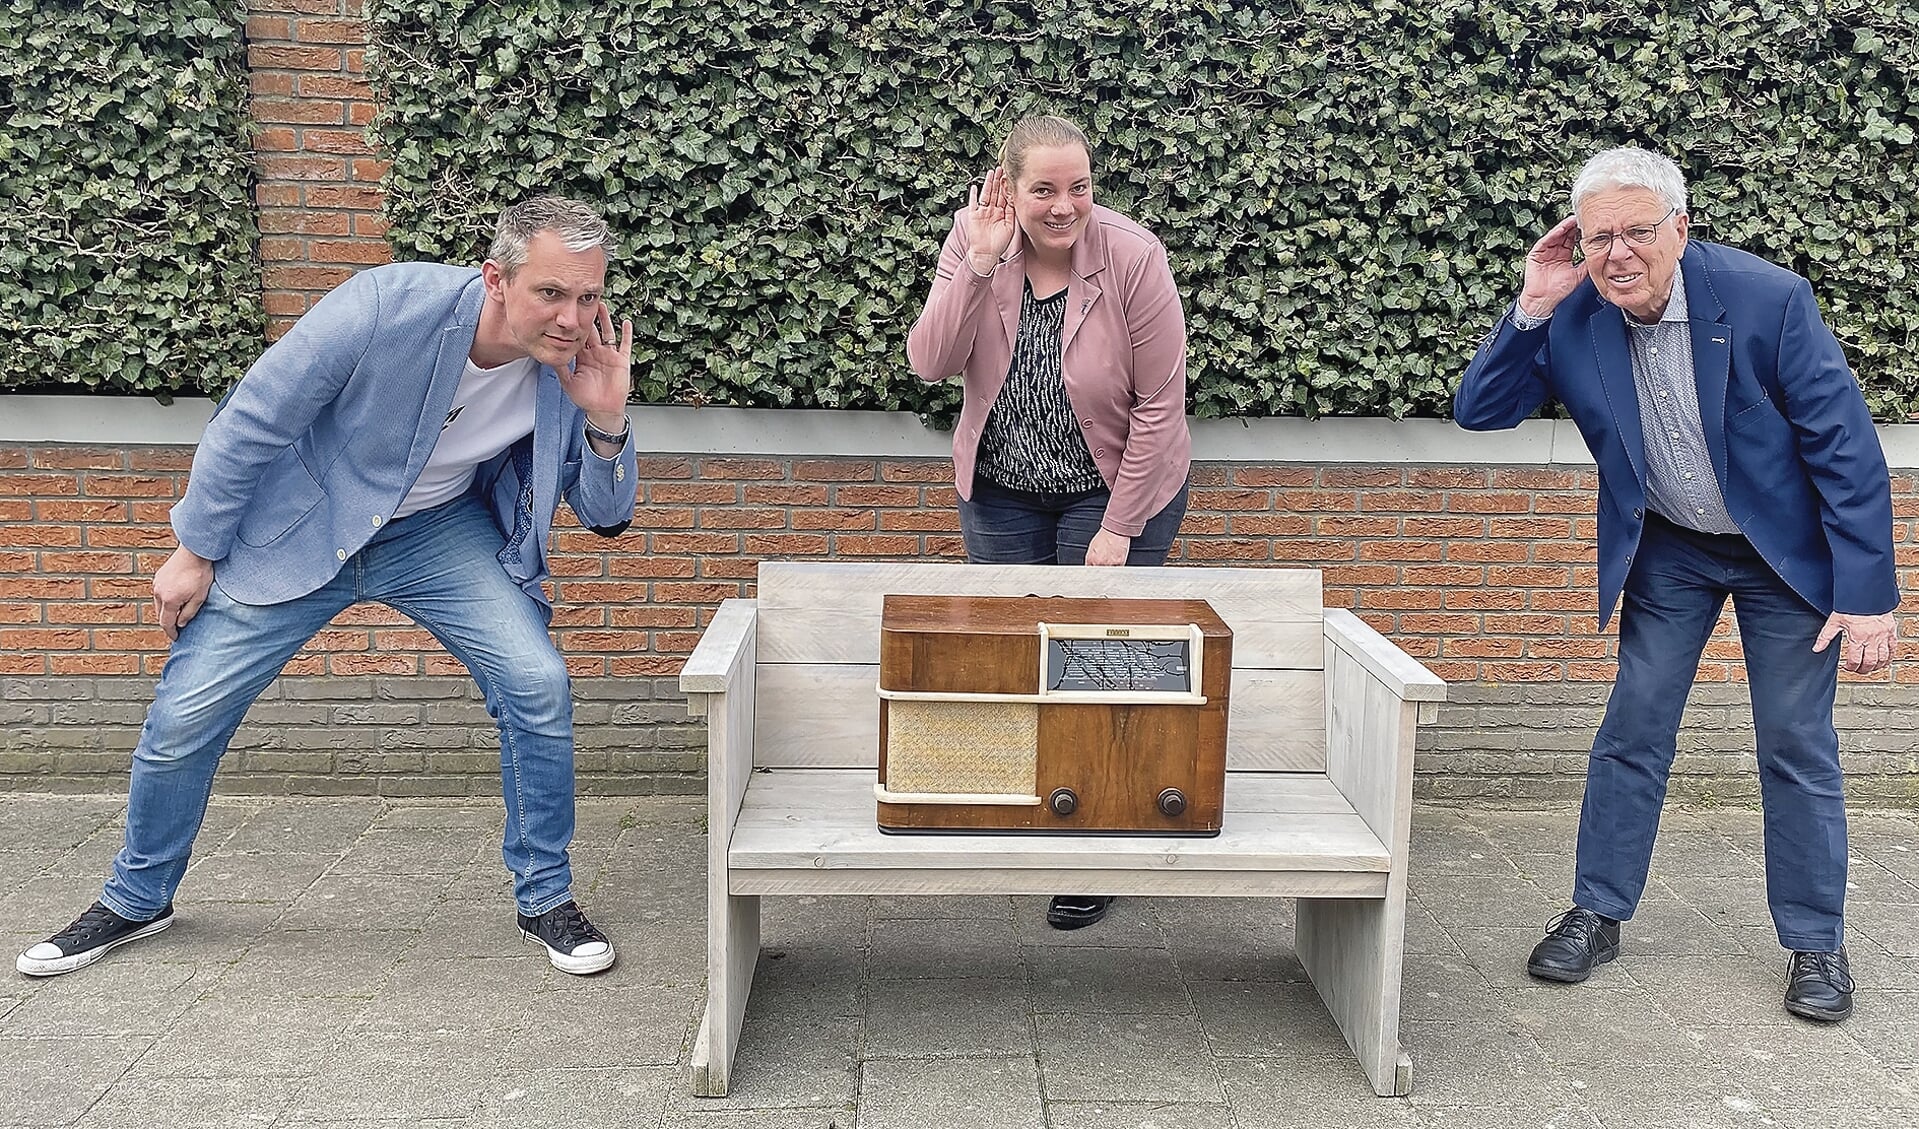 Mark te Poele, Nynke Vergeer en Kees Bazuine met de oude radio uit oorlogstijd, een van de gebruikte voorwerpen die terugkomen in de speurtocht.